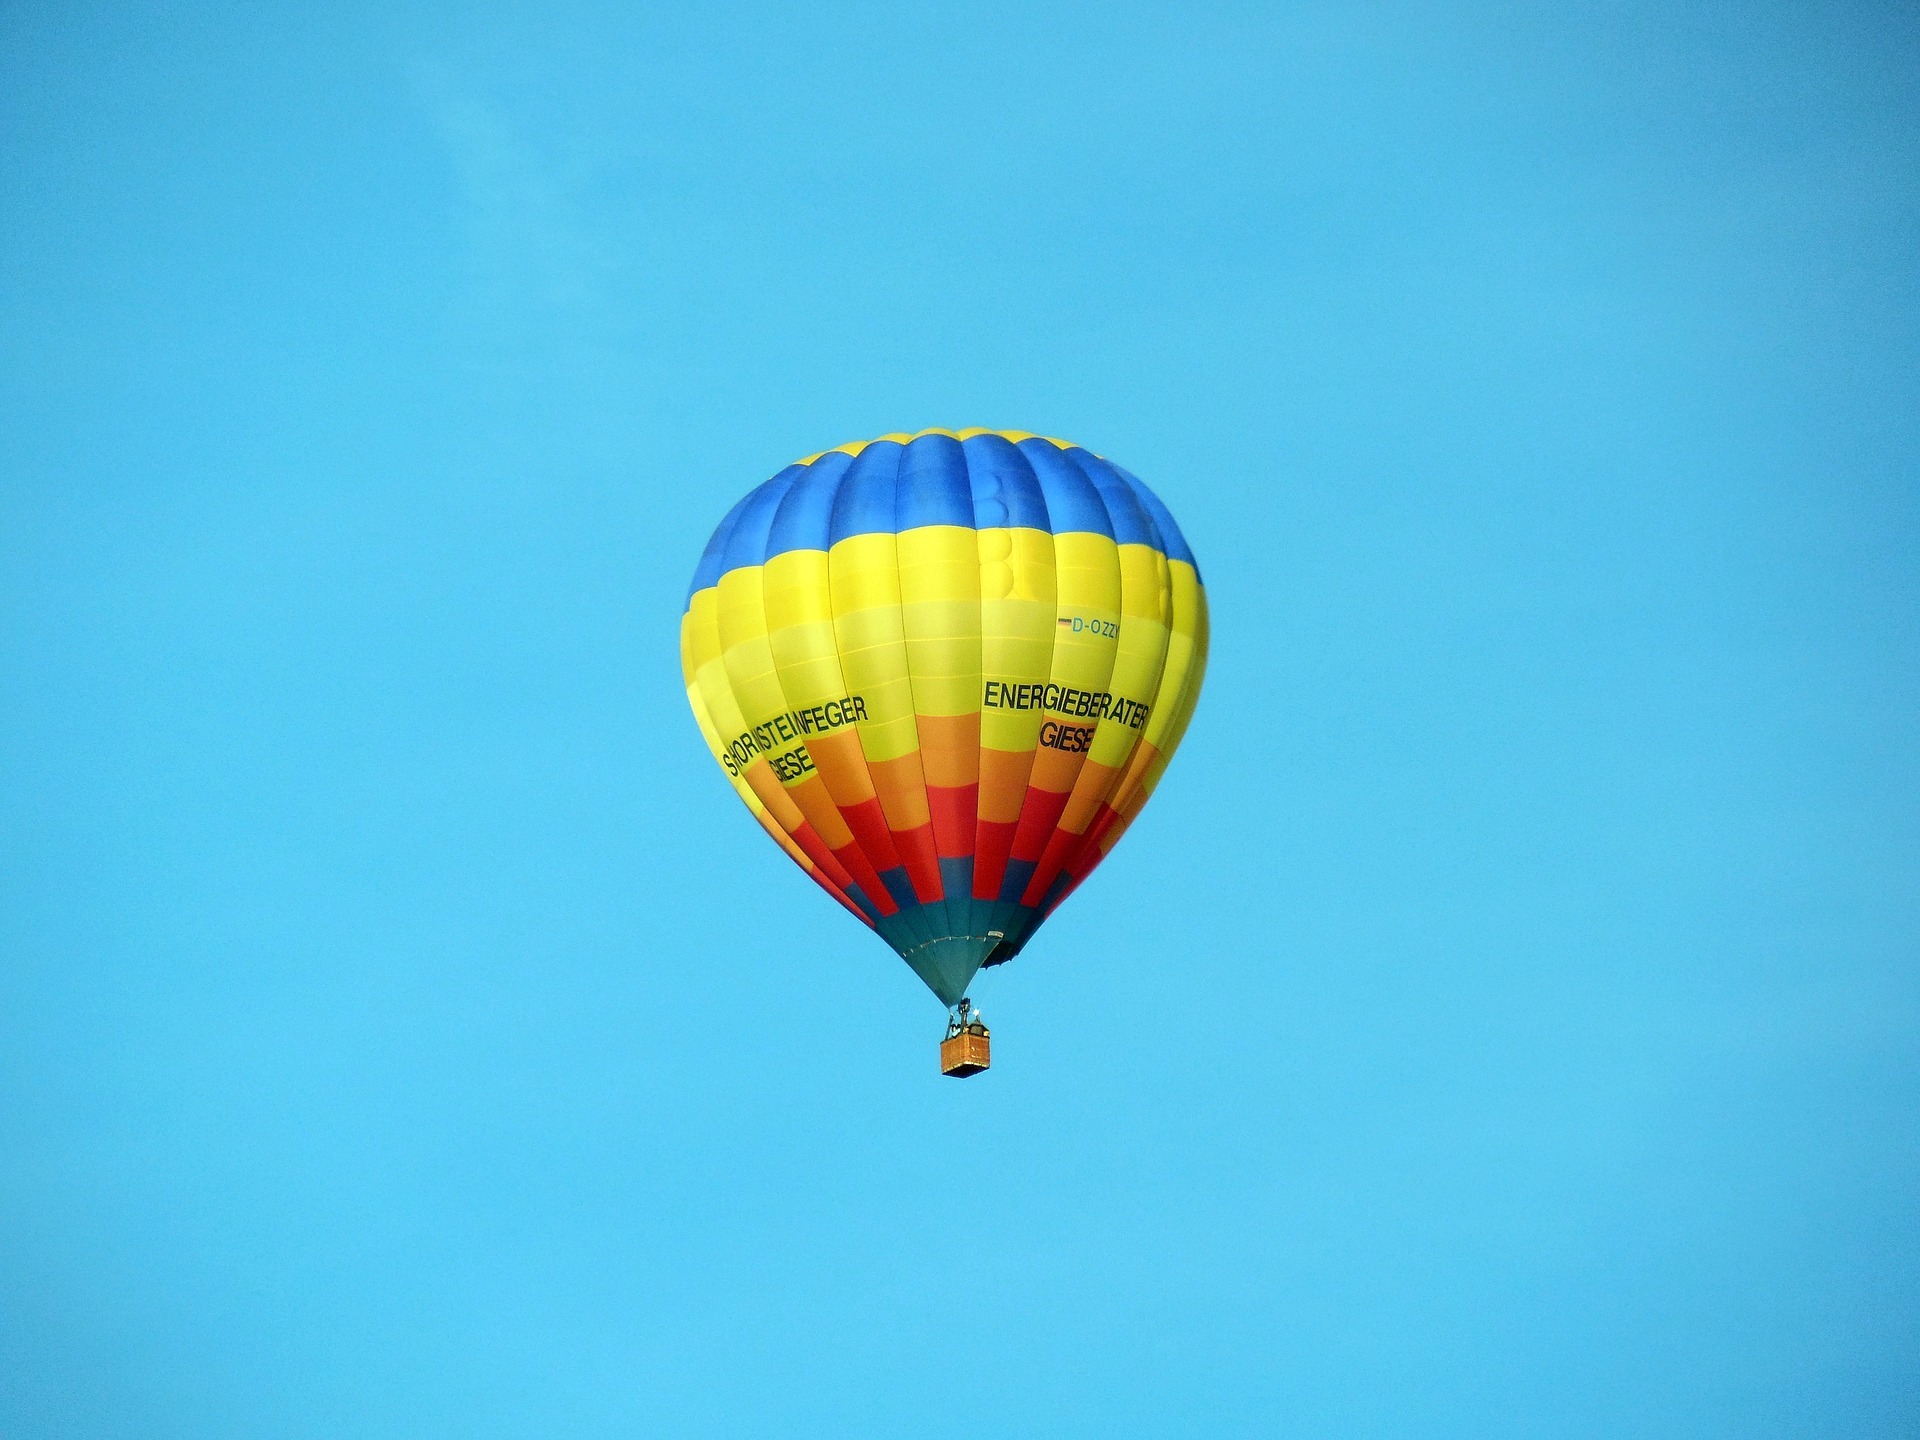 Ballonfahrt Rheinland-Pfalz, Heißluftballon am Himmel